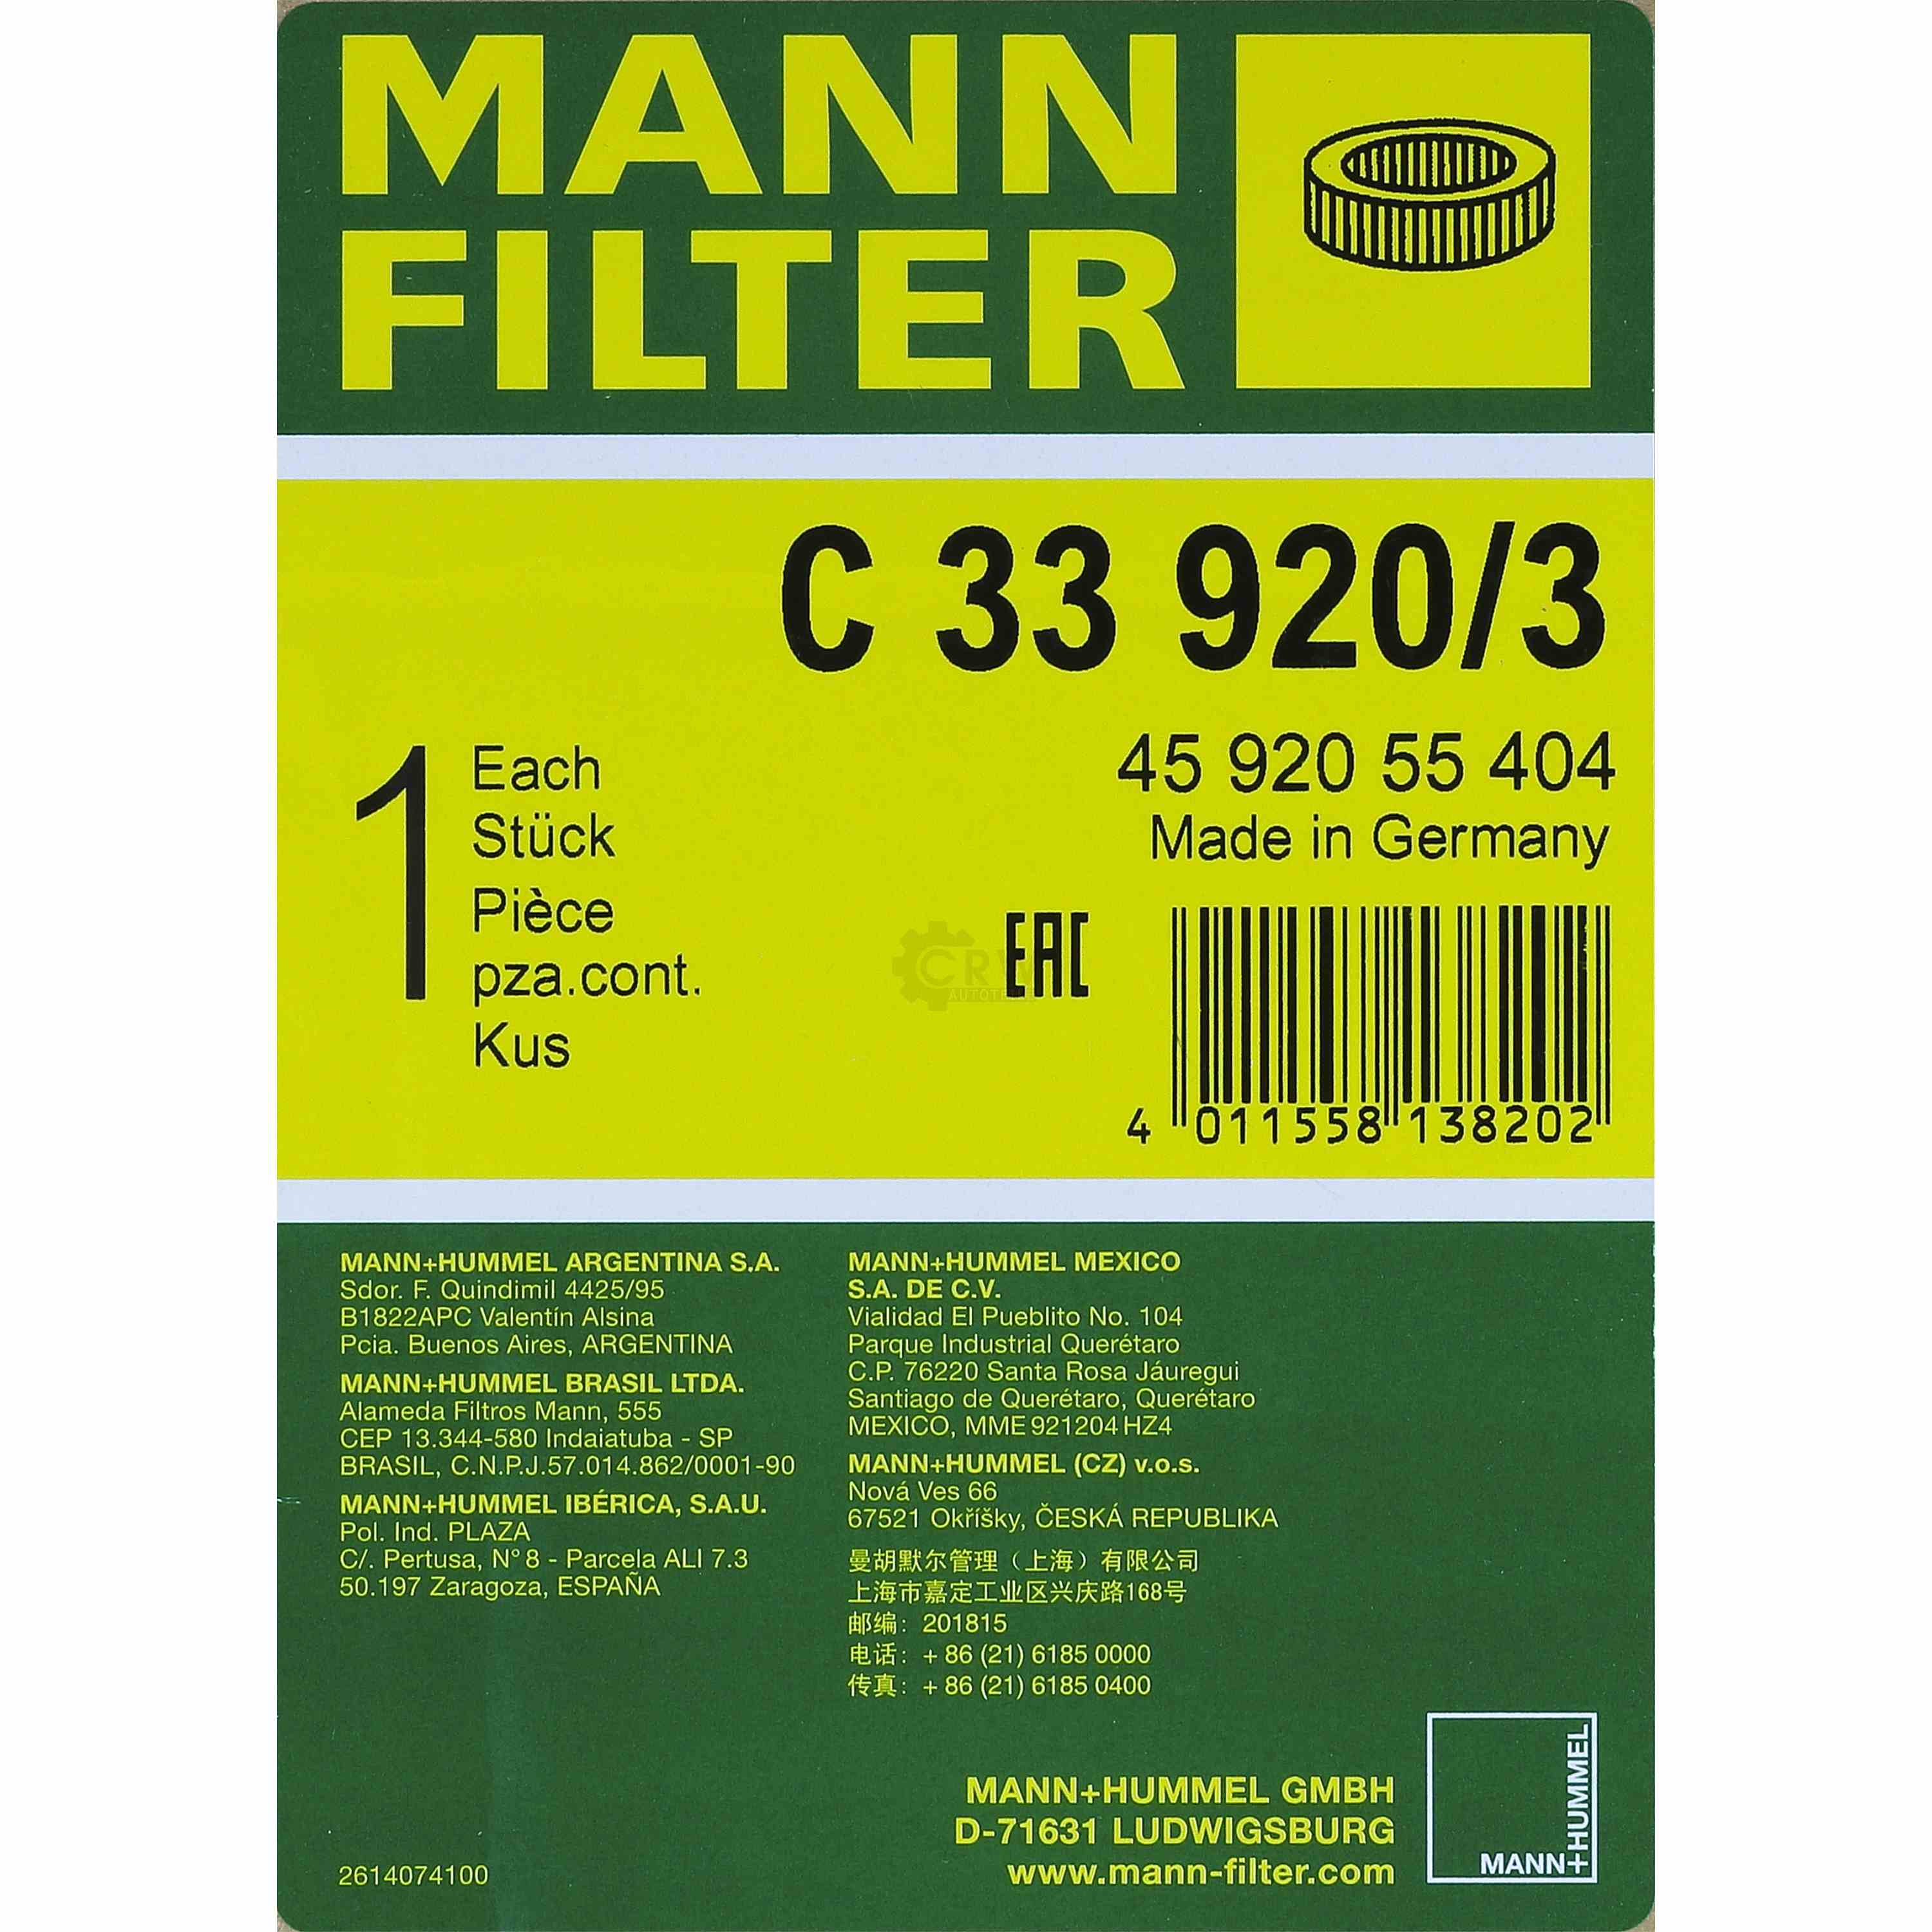 MANN FILTER Luftfilter C 33 920/3 für Renault Super 5  1.2 18 134_ 2.1 Diesel